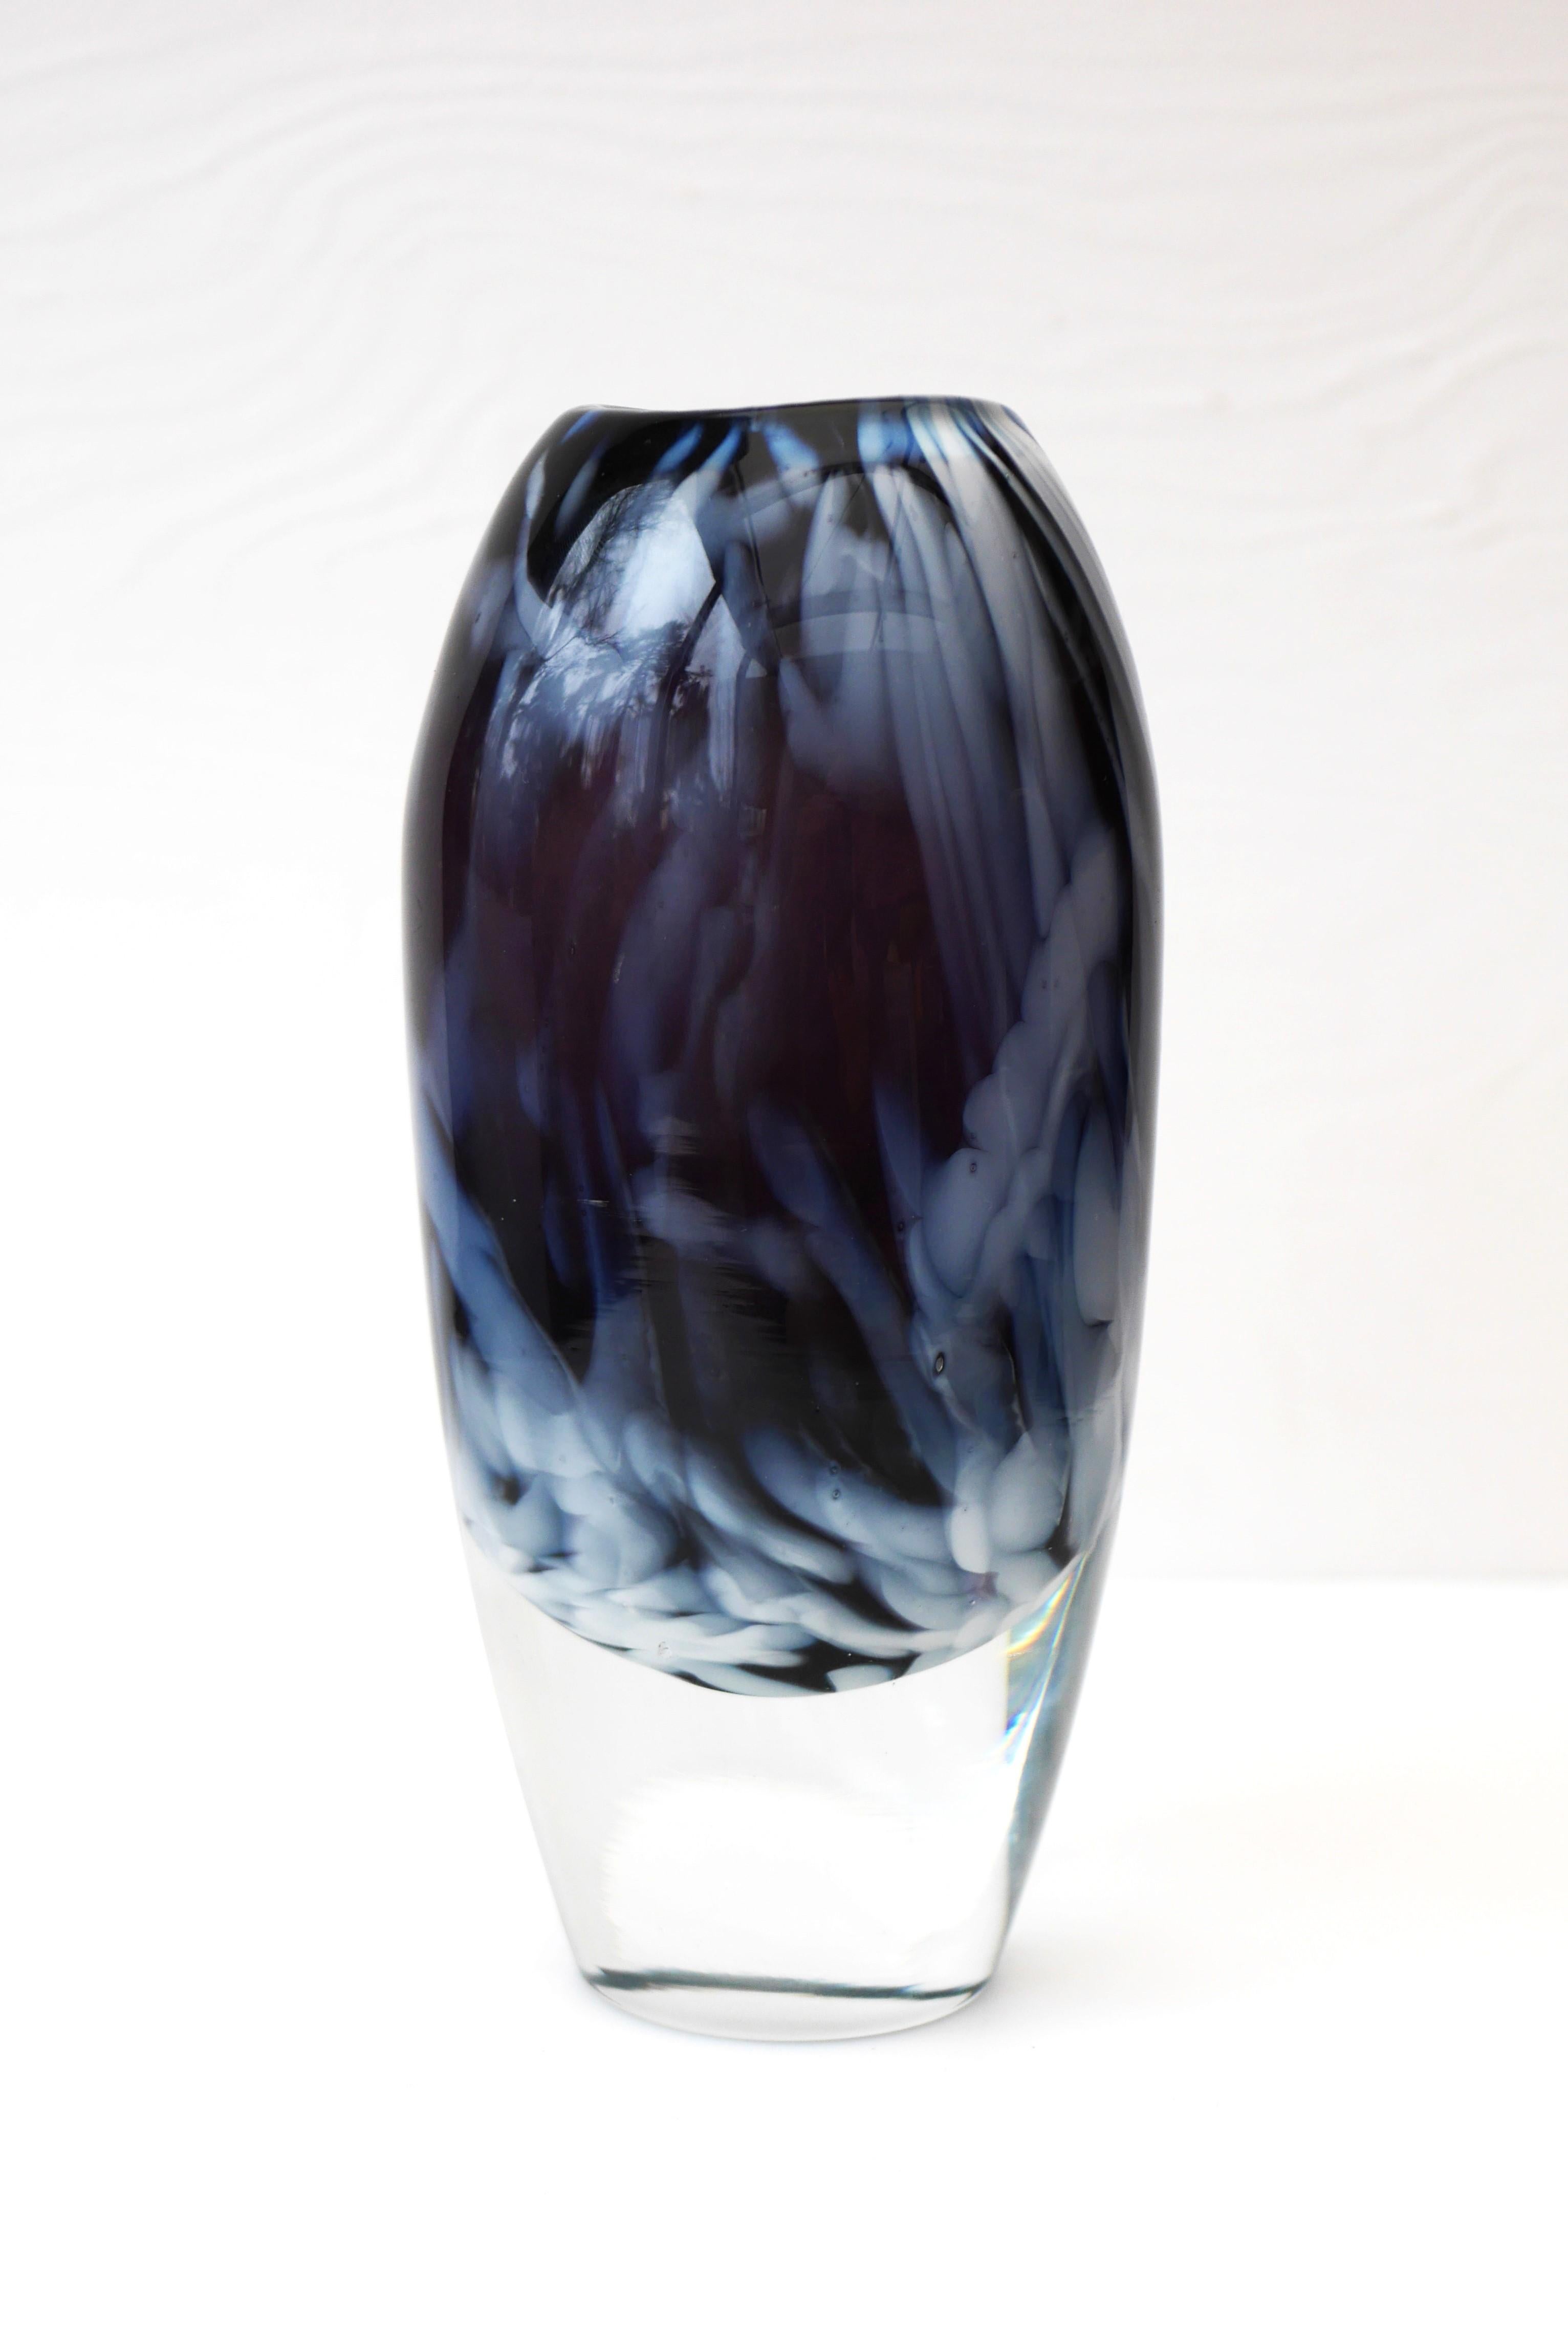 Mid-Century Modern Scandinavian art glass Vase by Kjell Engman, Sea Glassbruk, Sweden For Sale